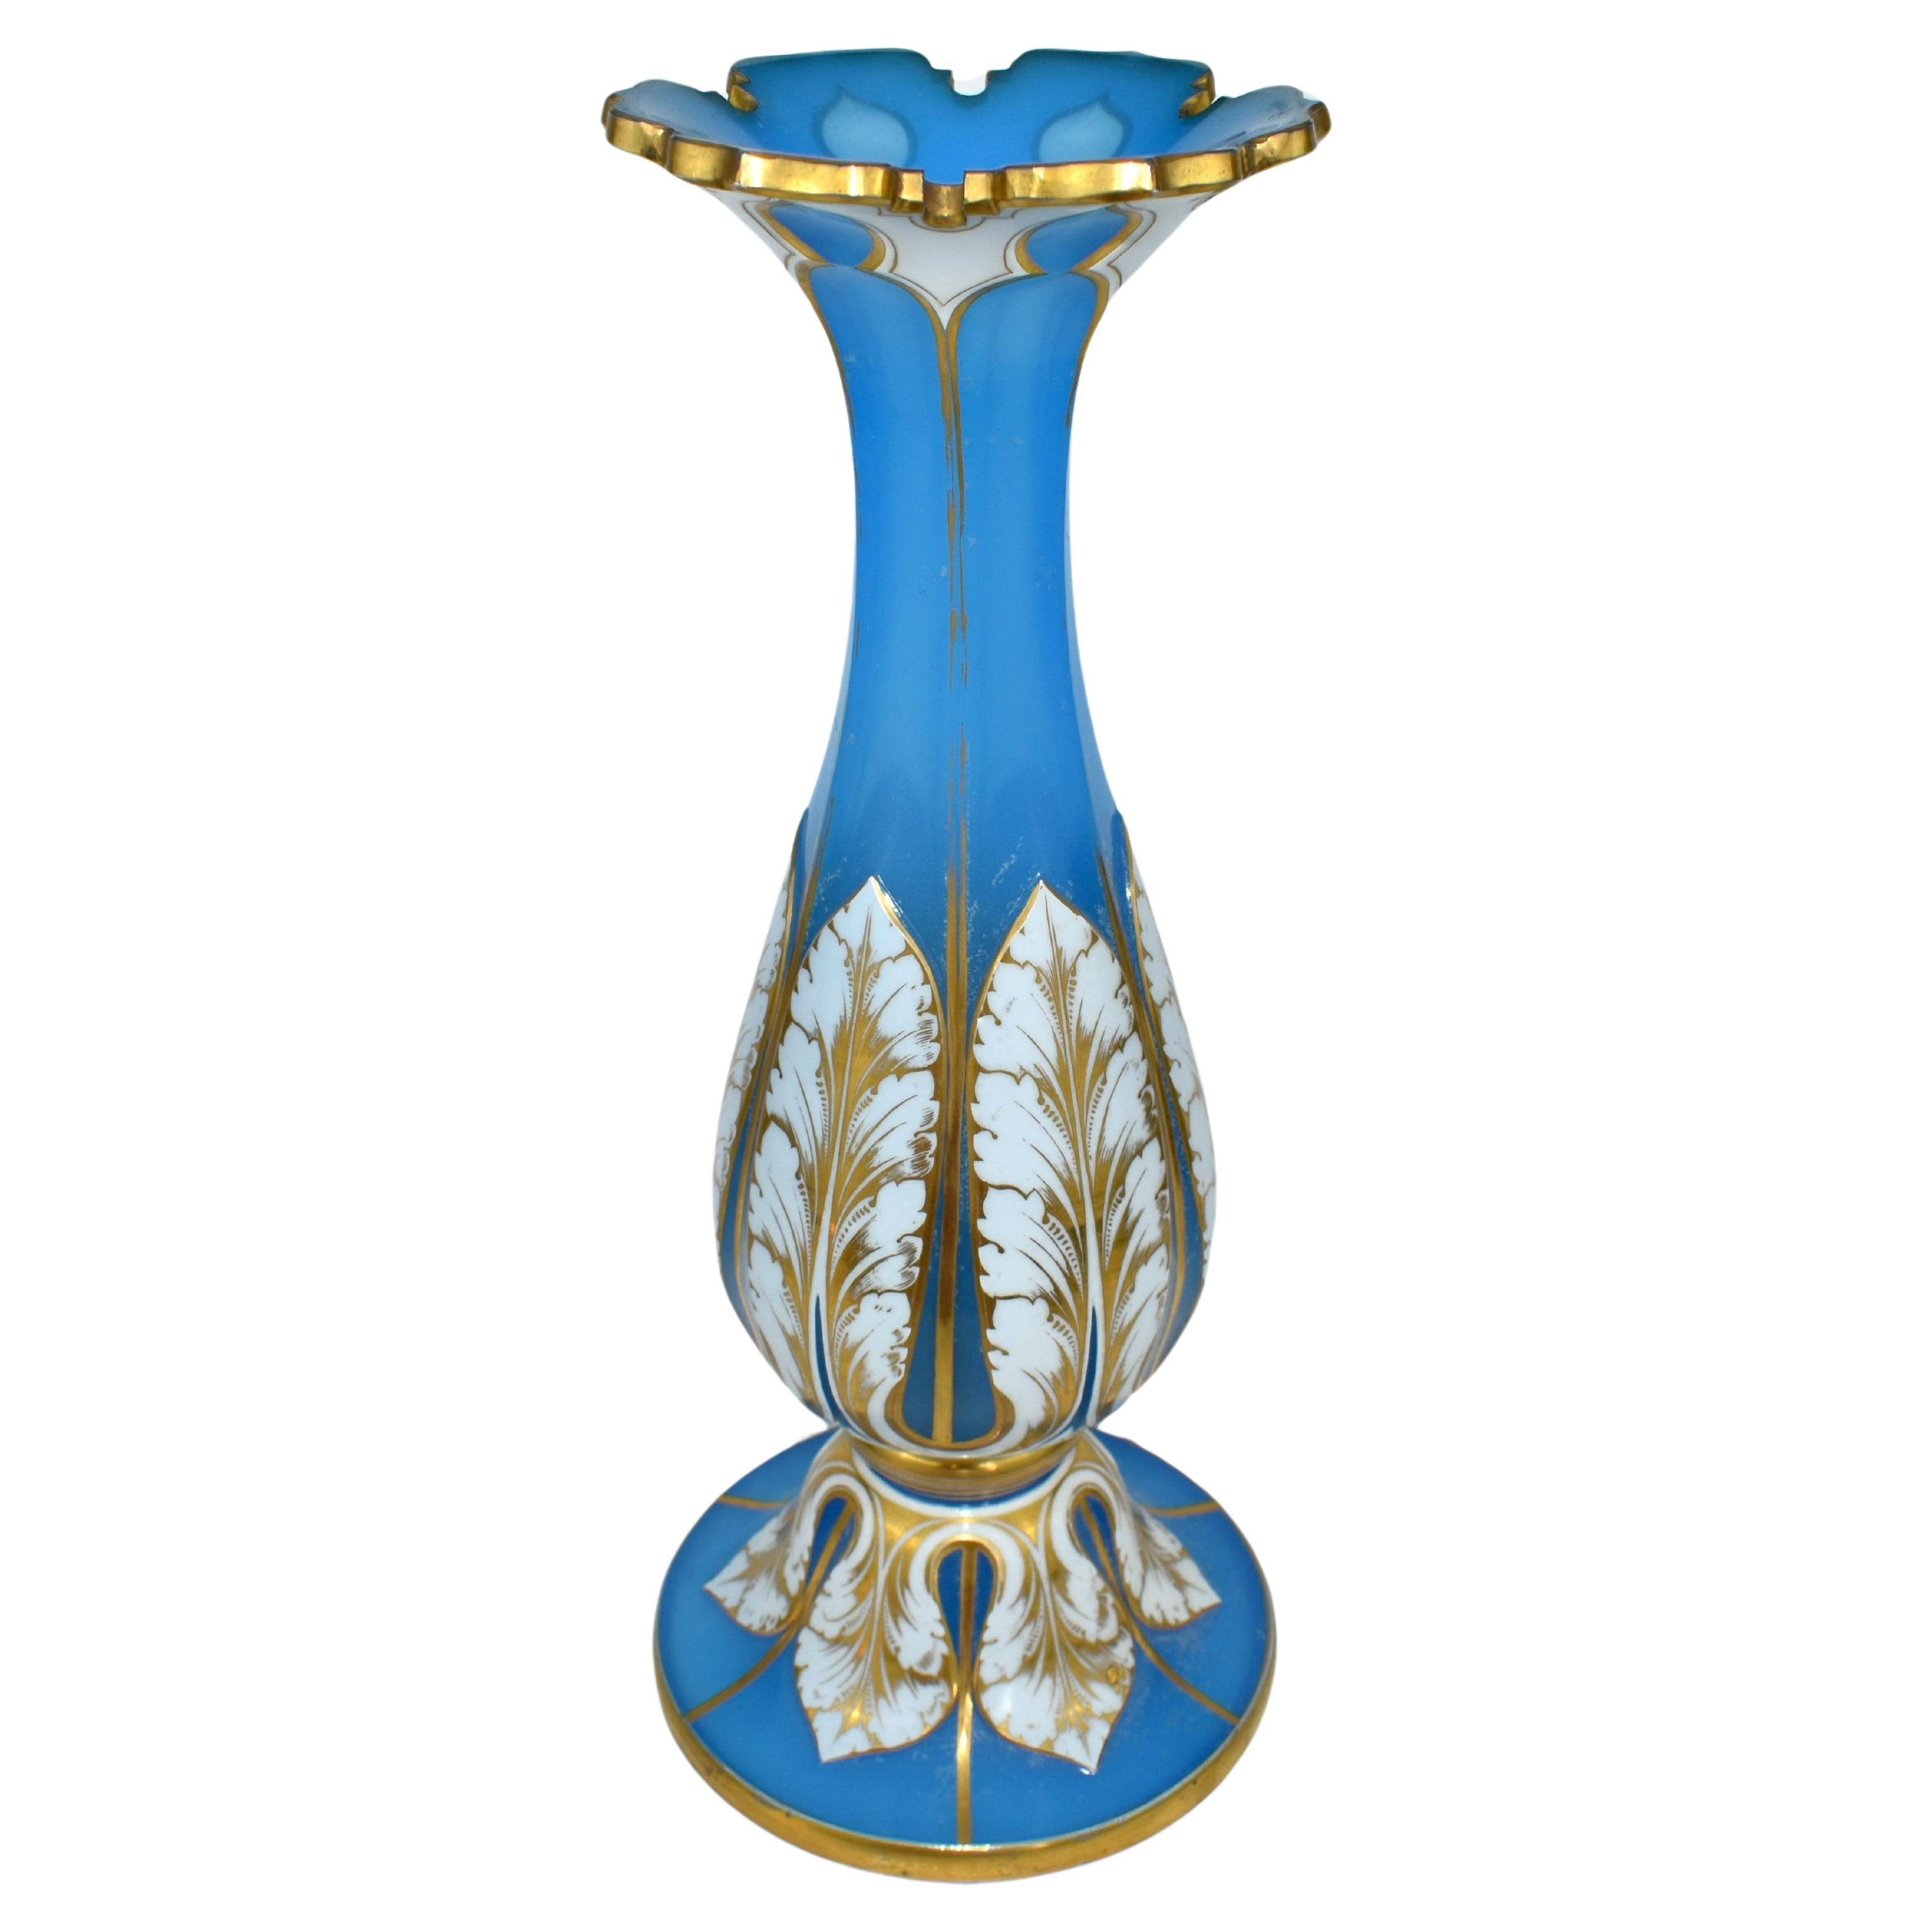 Außergewöhnliche Opalin-Overlay-Glasvase, weiß über blau

Blaues Opalglas überlagert mit milchig-weißem Opalglas

Schnitt Vergoldeter Rand

Reiche und feine Vergoldung Dekoration rundum

Bohemia, um 1860.